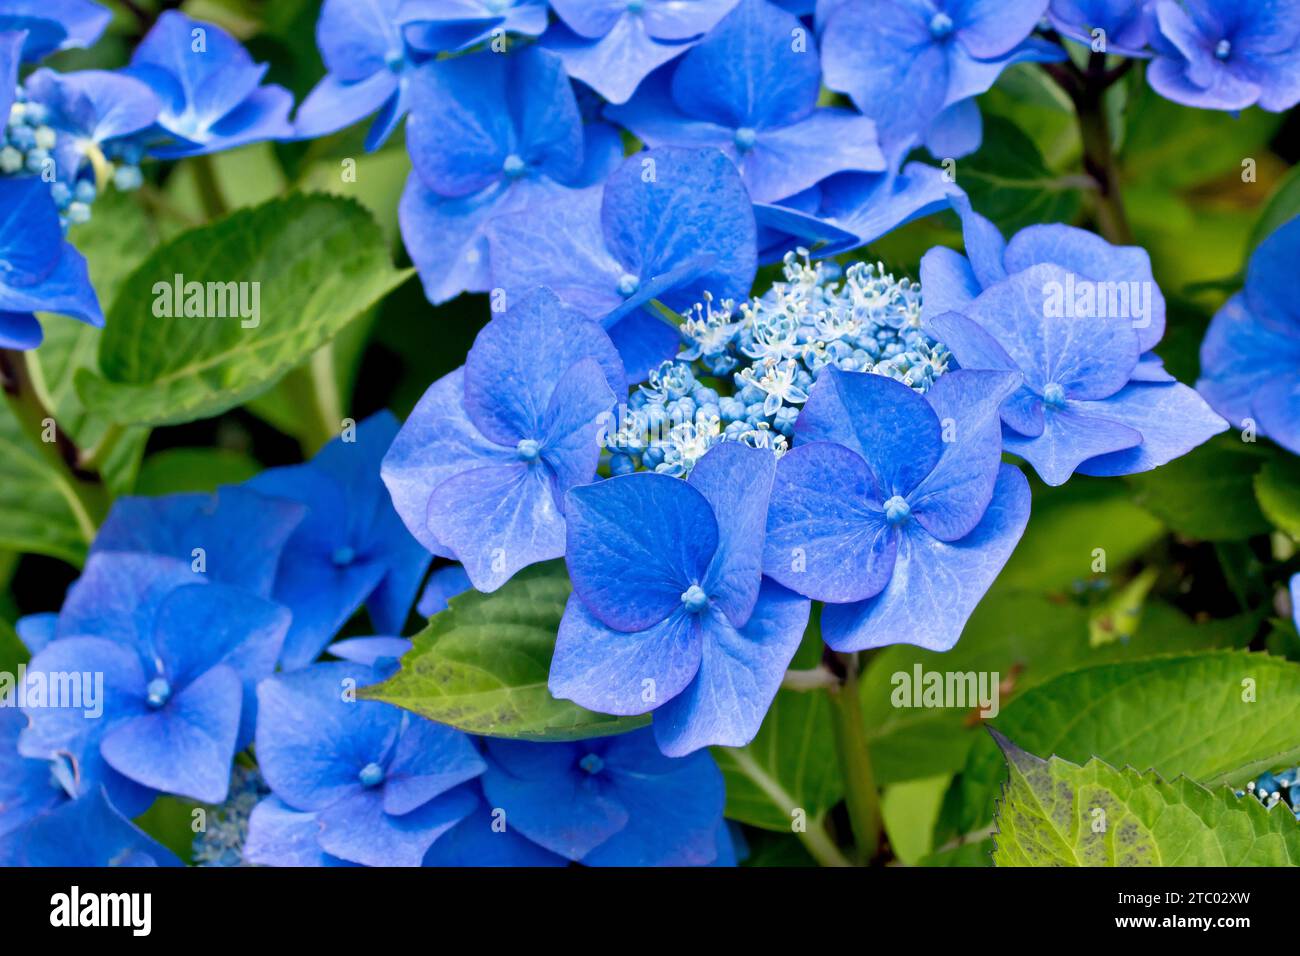 Blue Lace Cap Hydrangea, gros plan se concentrant sur une seule tête de fleur de l'arbuste montrant les grandes fleurs extérieures bleues et les fleurs intérieures plus petites. Banque D'Images